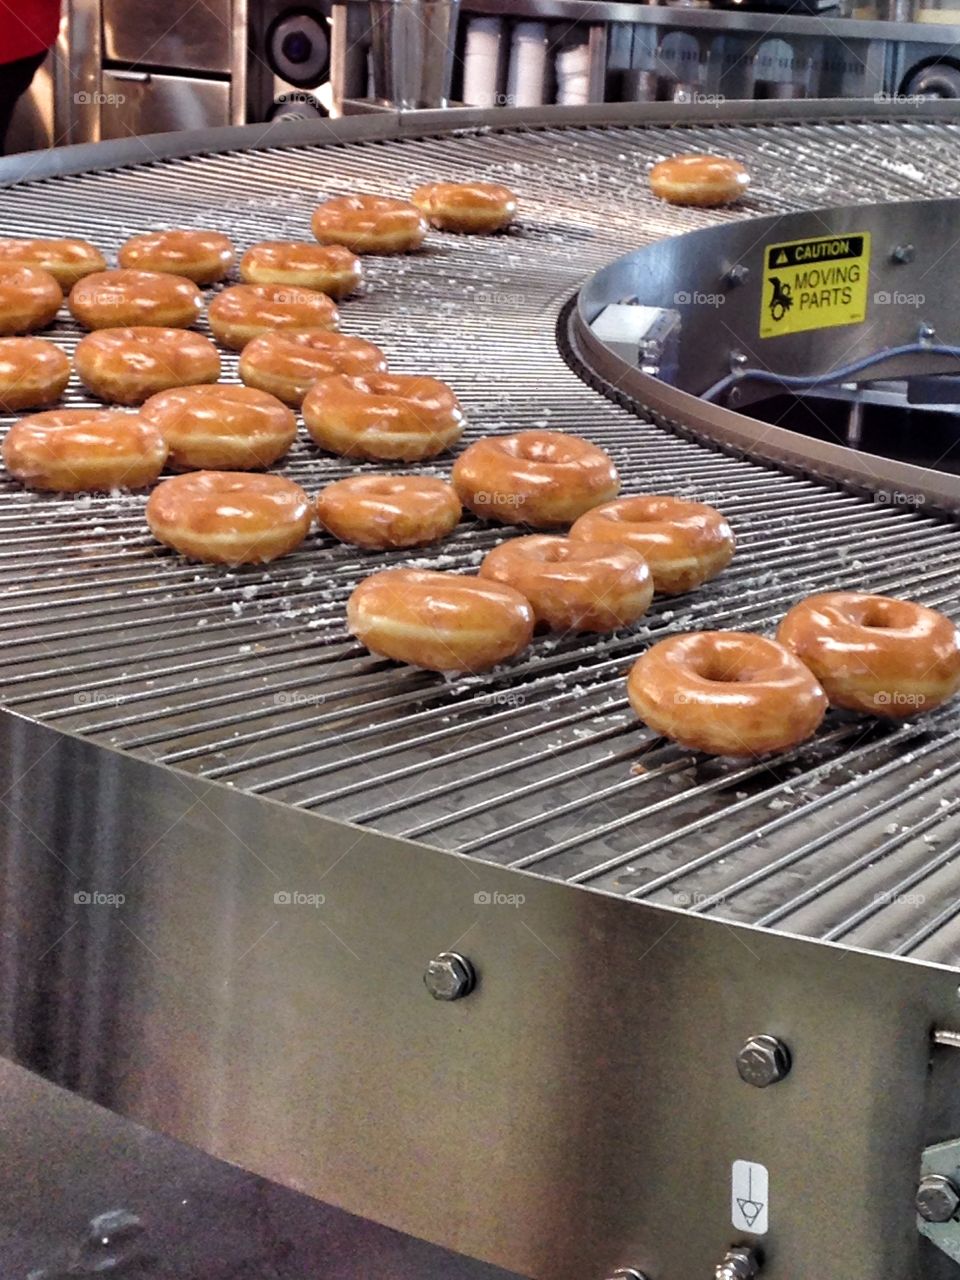 Time to make the donuts. Glazed donuts on baking conveyer belt at Krispy Kreme